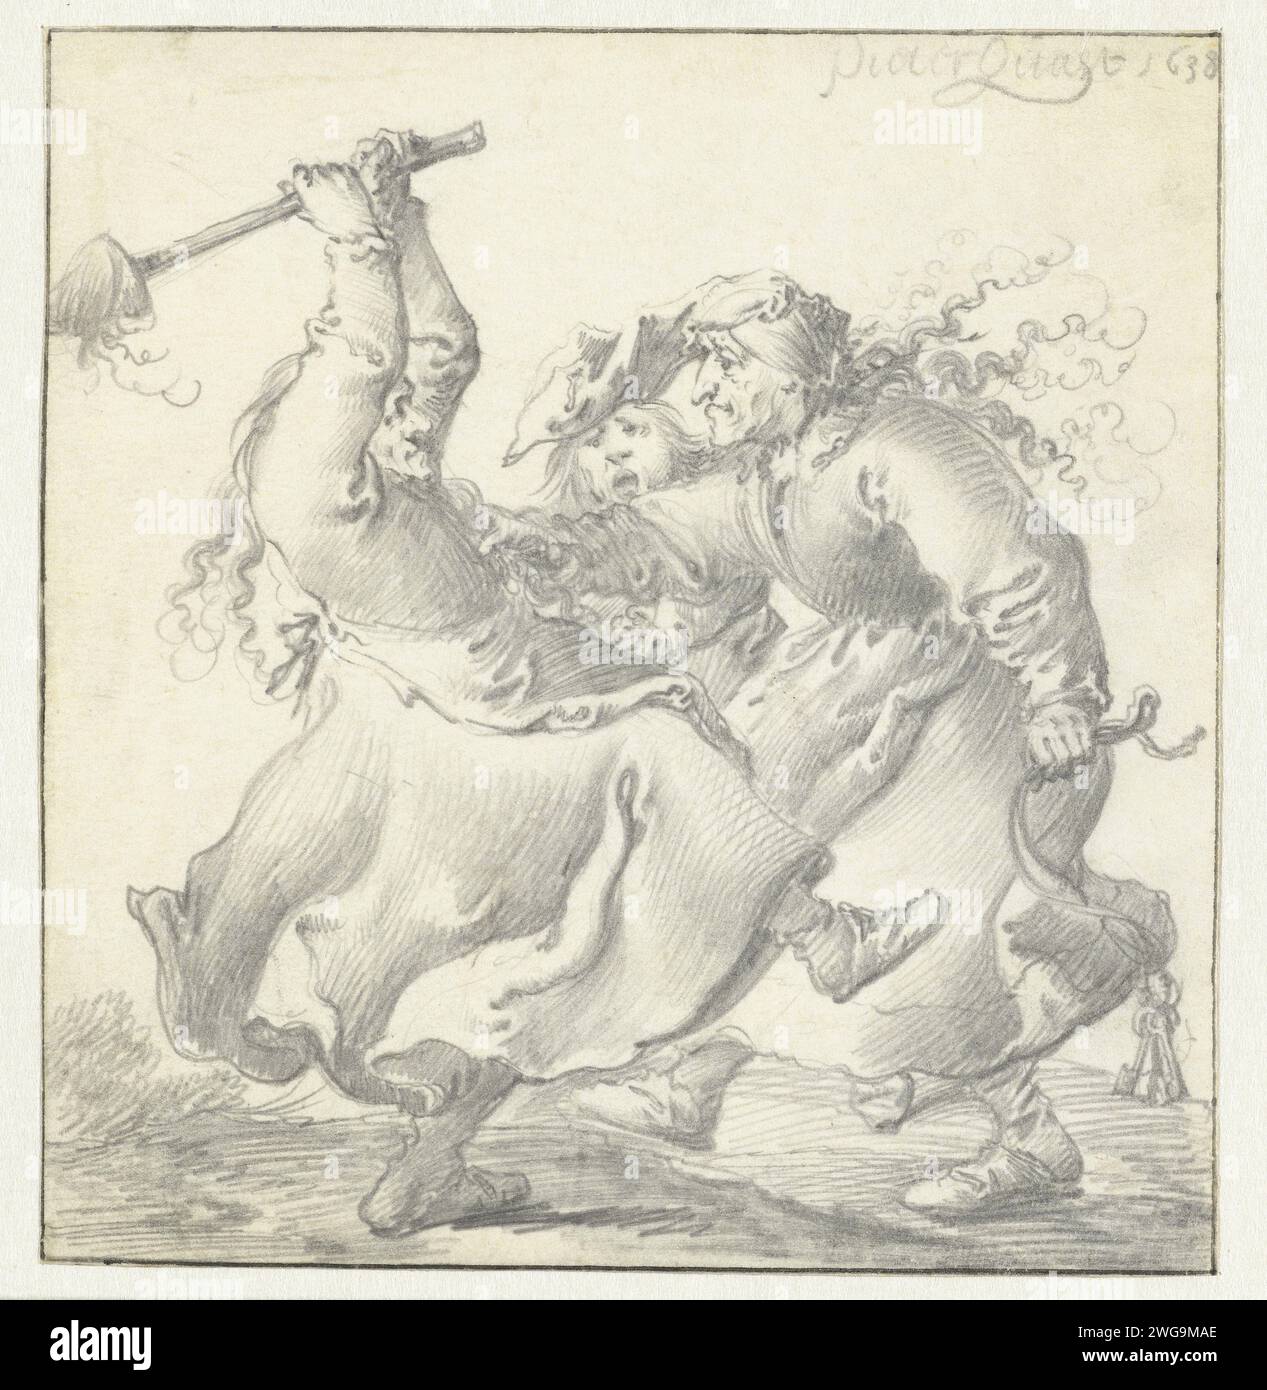 Zwei kämpfende Frauen, Pieter Jansz Quast, 1638 zeichnend Kampf zwischen zwei alten Frauen, mit einem Mann, der versucht, zwischen die beiden zu kommen. Pergament (tierisches Material). Bleistift, hässliche alte Frau, Kumpel. Kämpfen Stockfoto